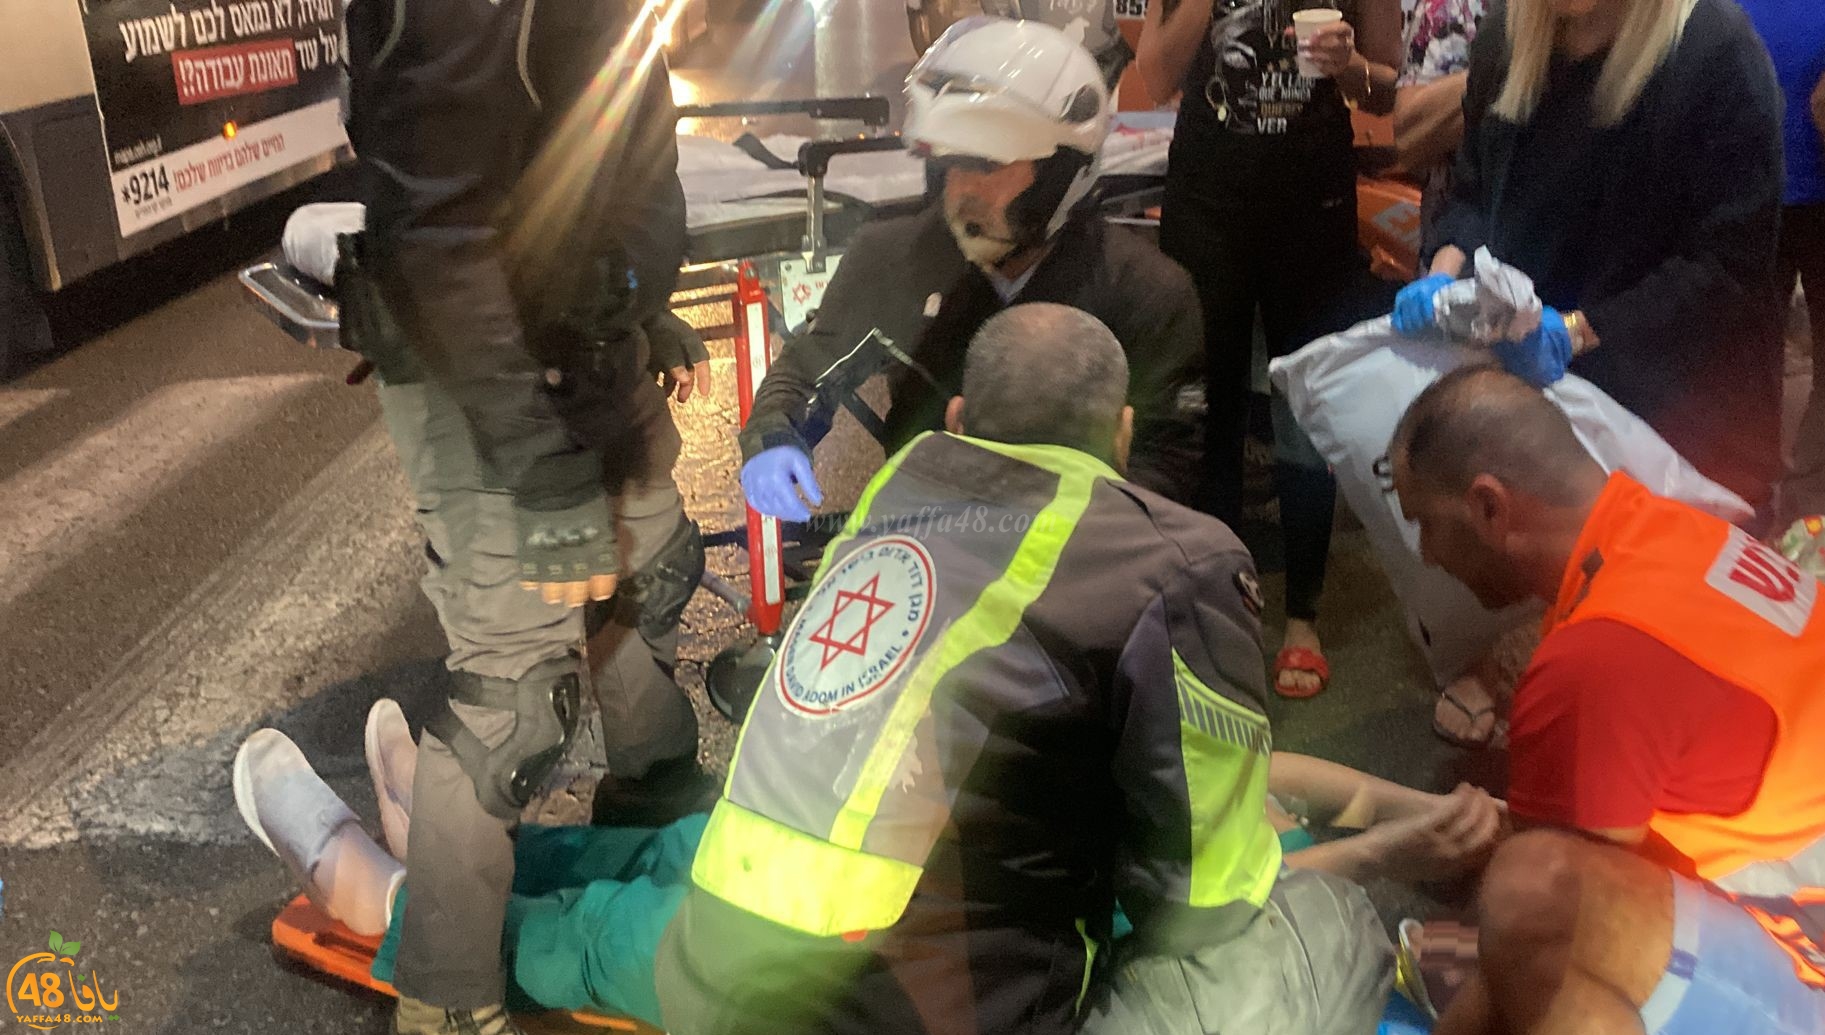  يافا: اصابة متوسطة لسيدة بحادث دهس ضرب وهرب